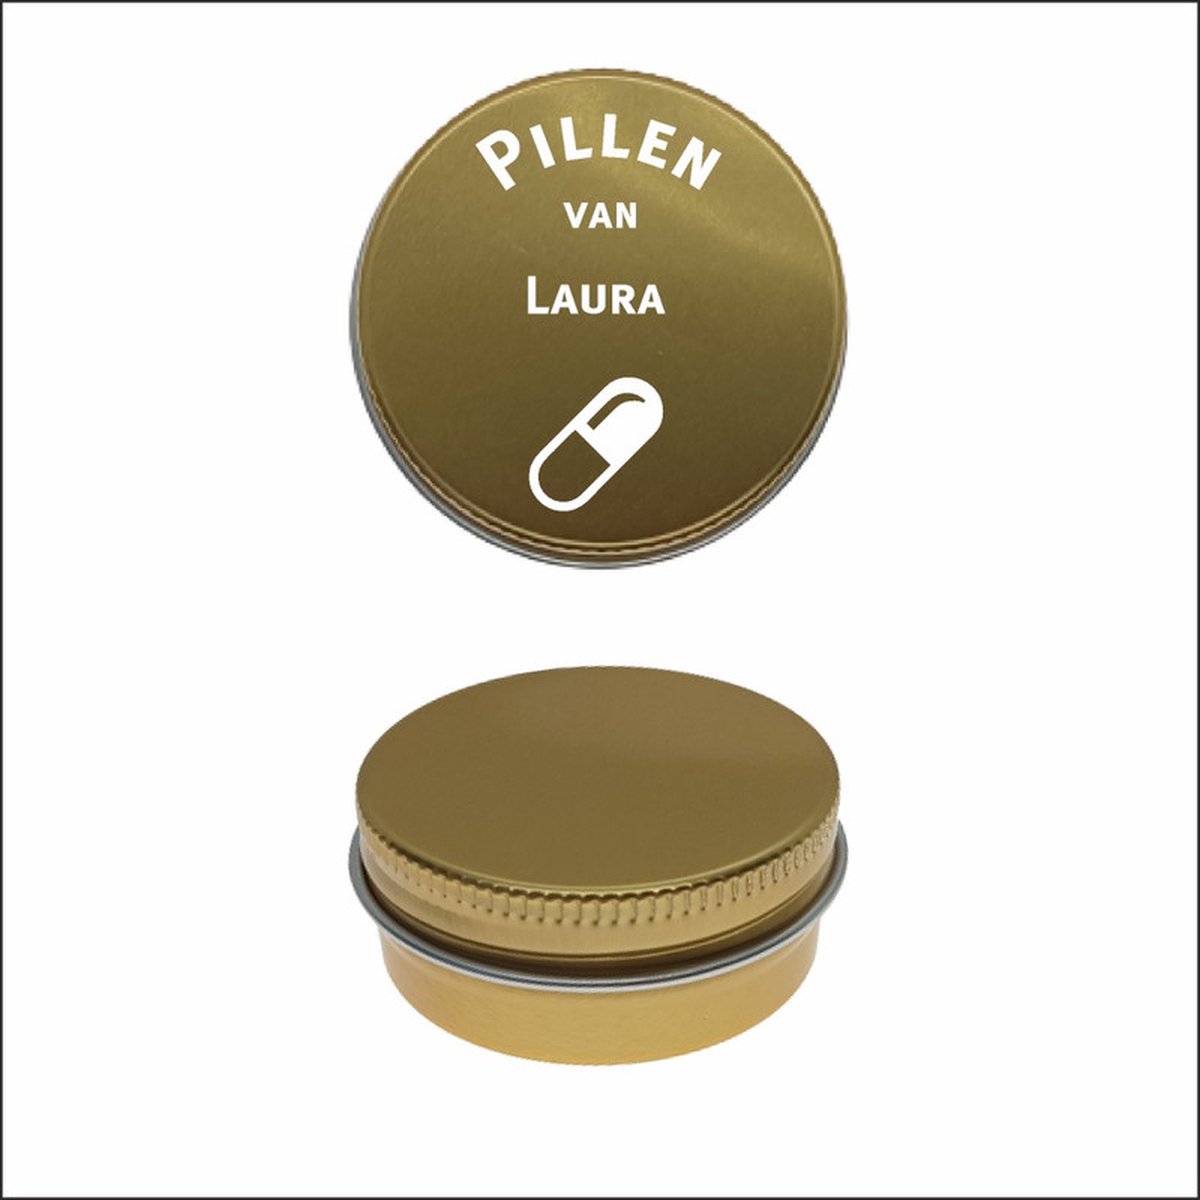 Pillen Blikje Met Naam Gravering - Laura